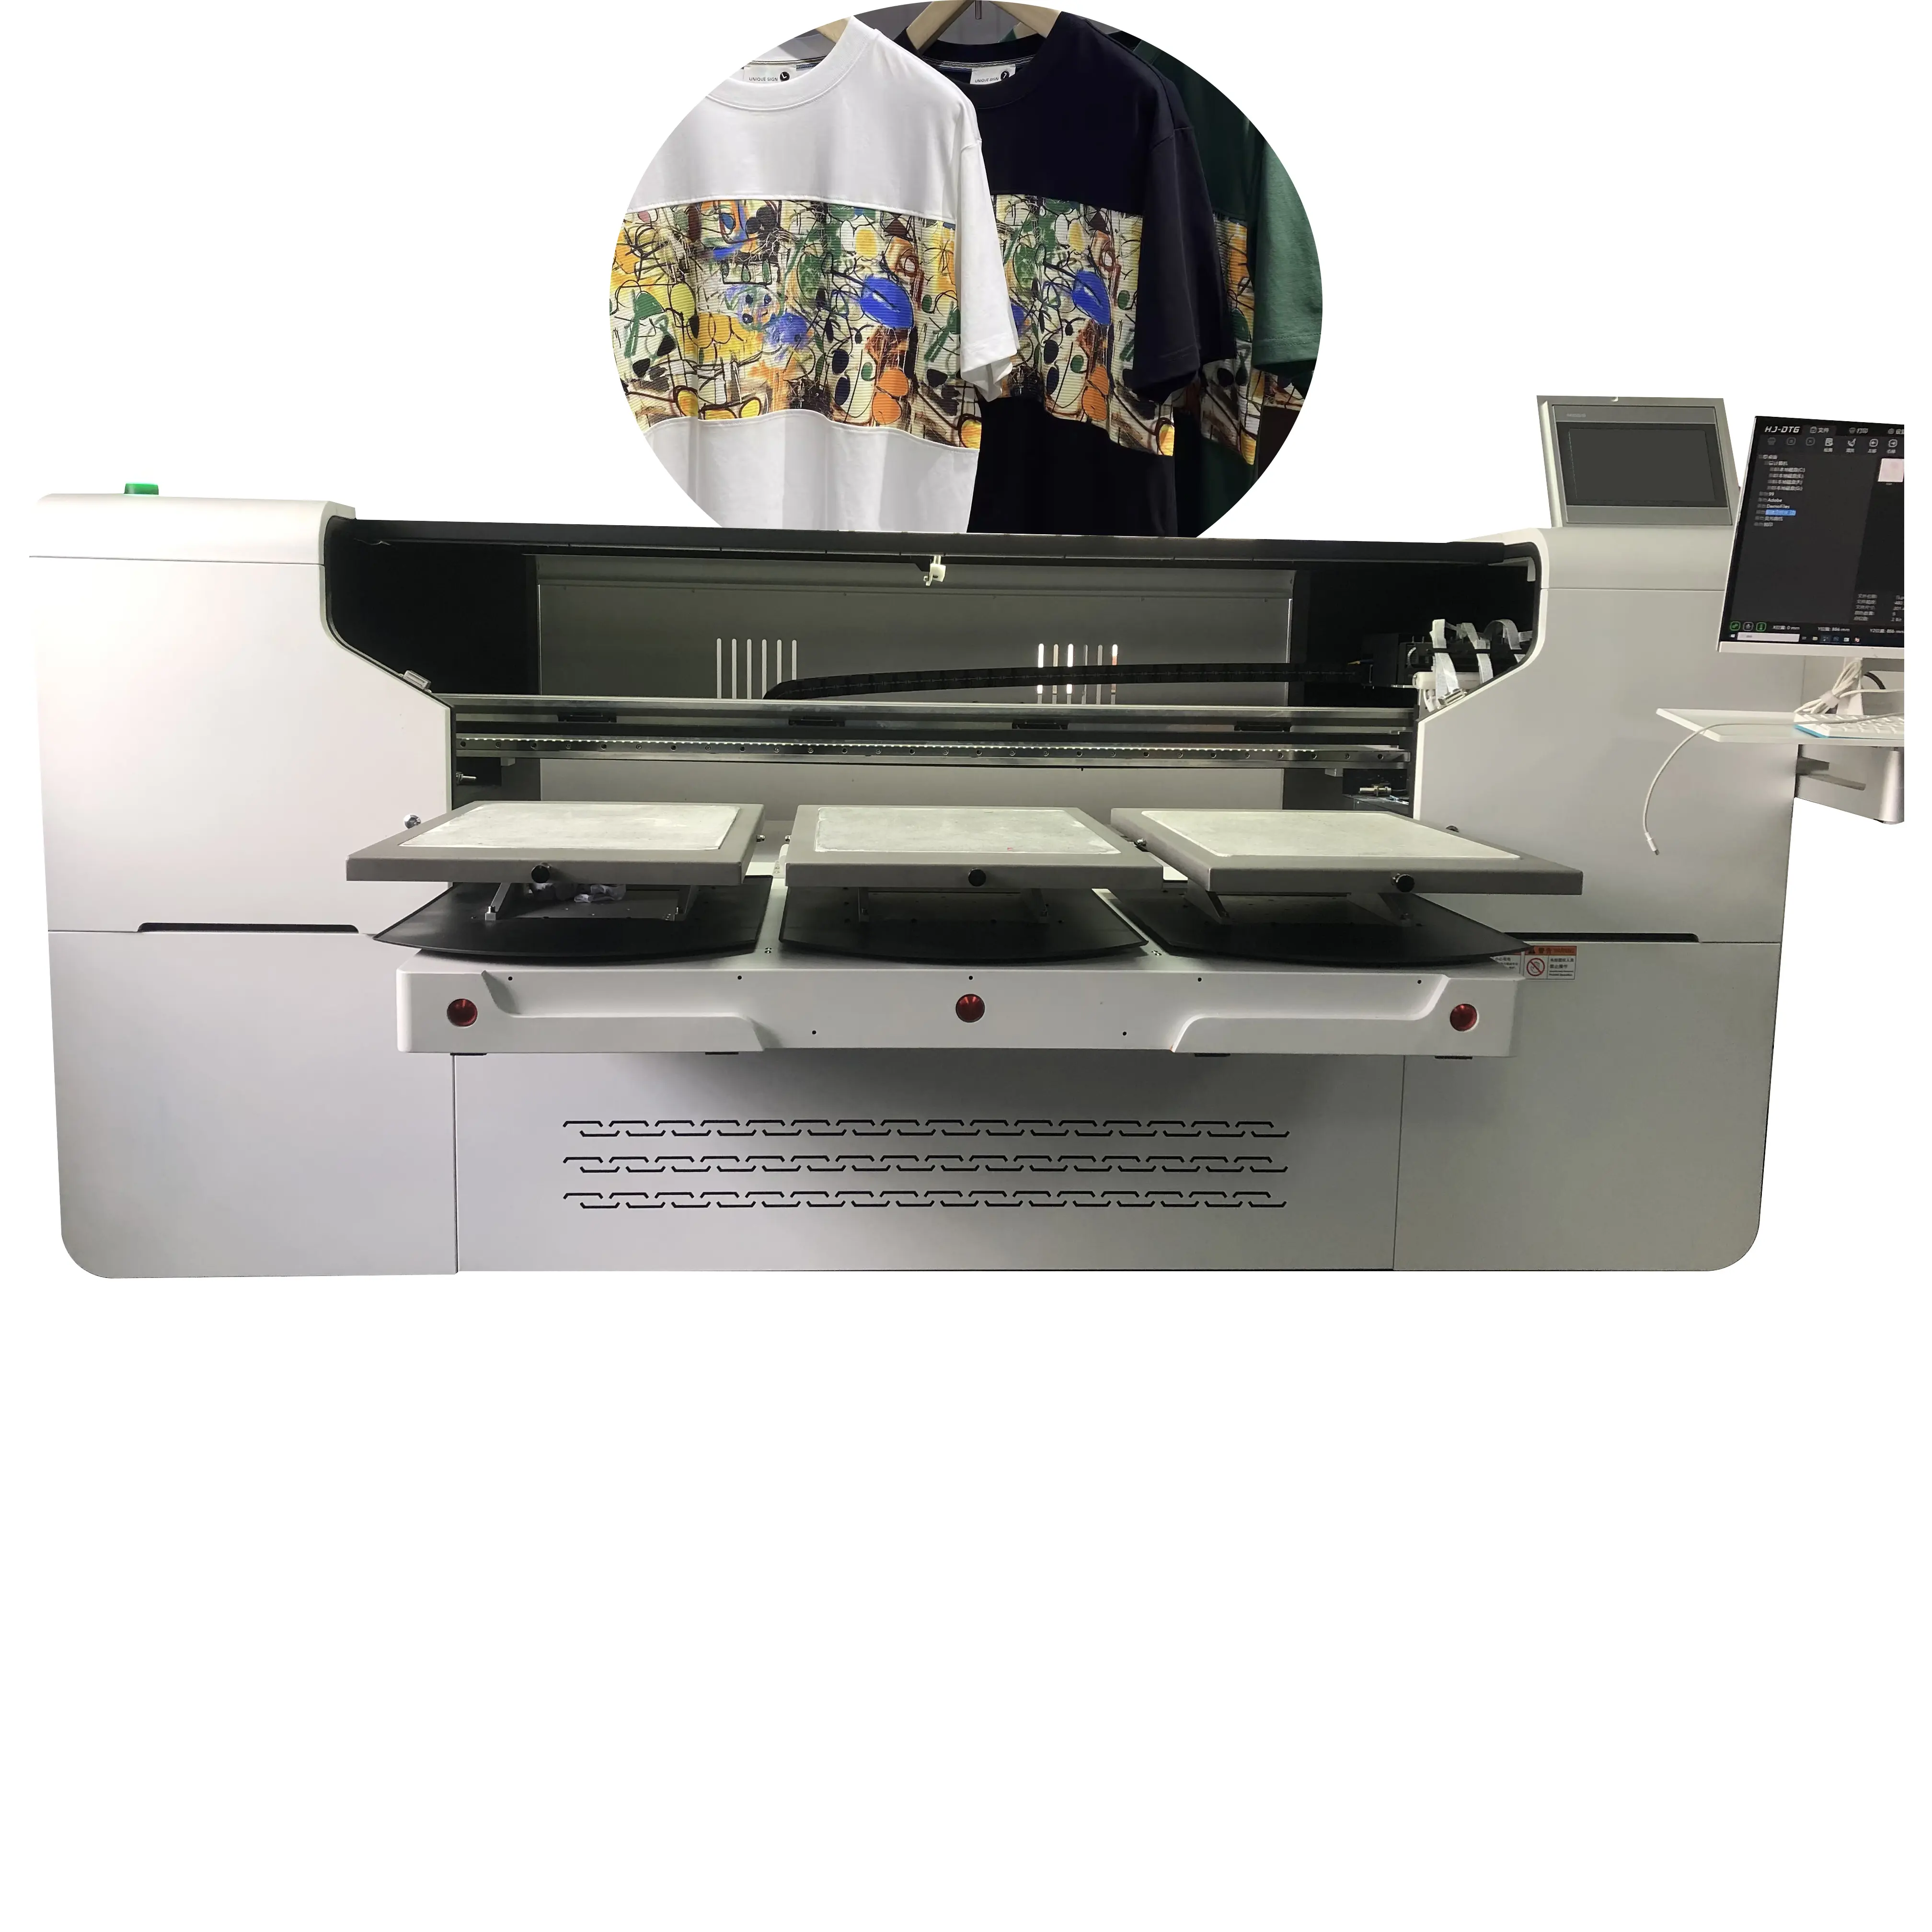 Guangmei Impressora automática a jato de tinta para camisetas, impressora Dtg, máquina de impressão de camisetas direta para impressora de roupas